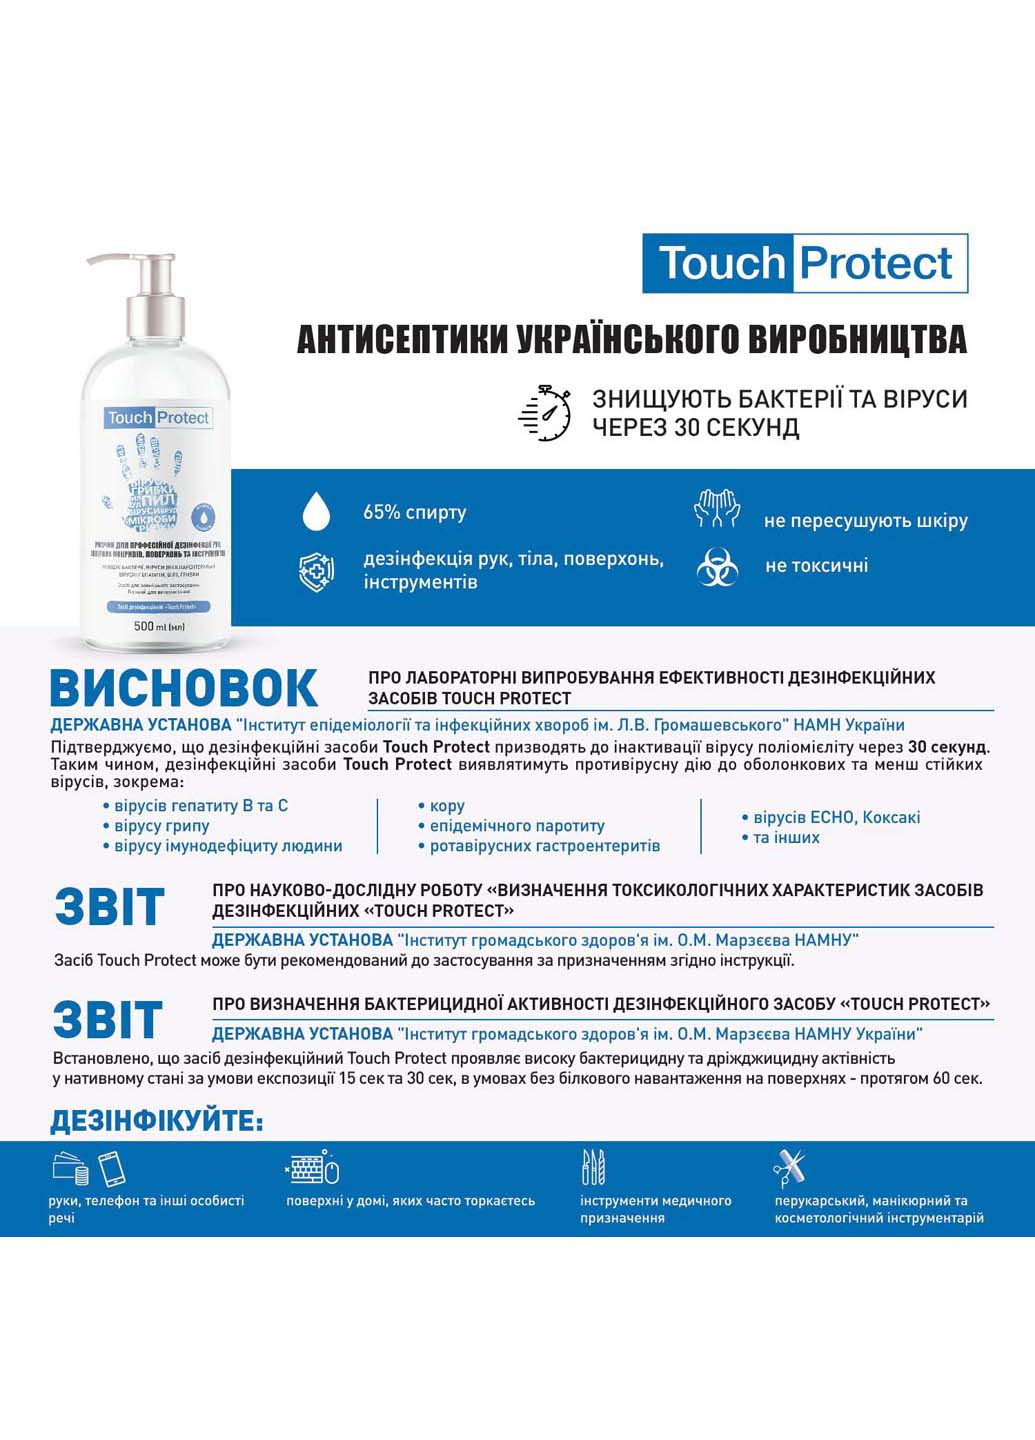 Антисептик гель для дезинфекции рук, тела и поверхностей 500 мл Touch Protect (264920507)